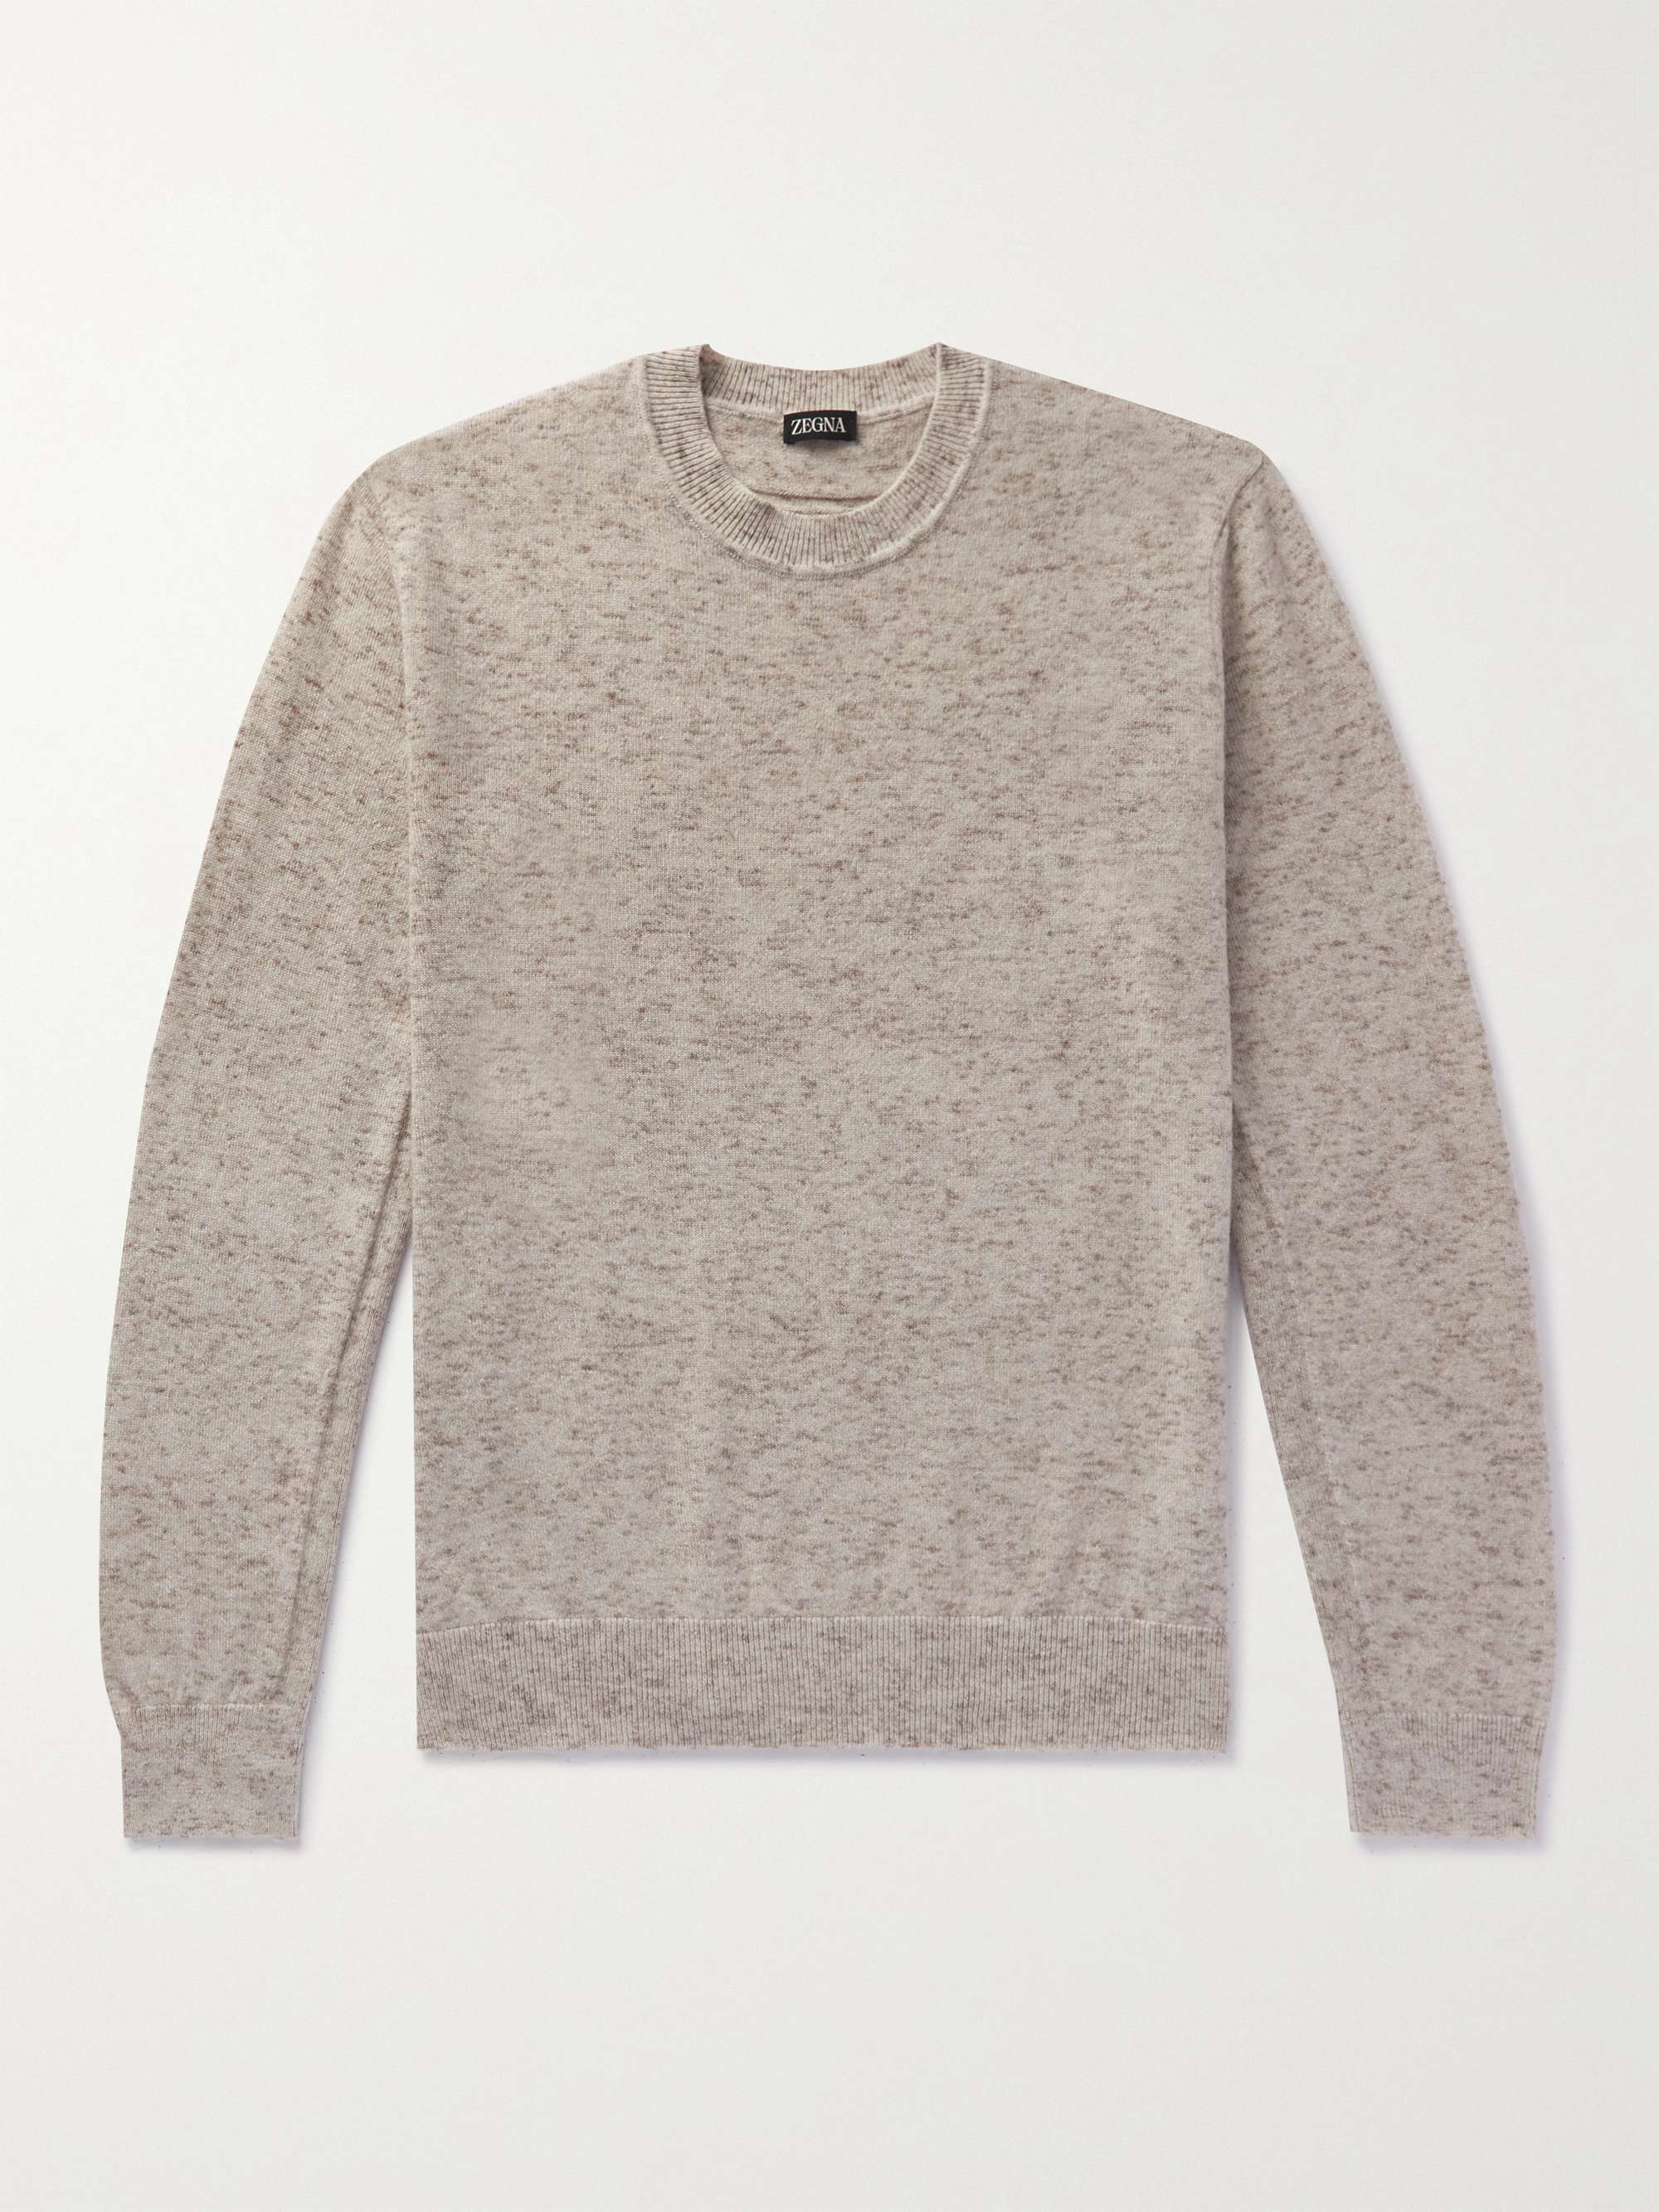 ZEGNA Cashmere-Blend Sweater for Men | MR PORTER